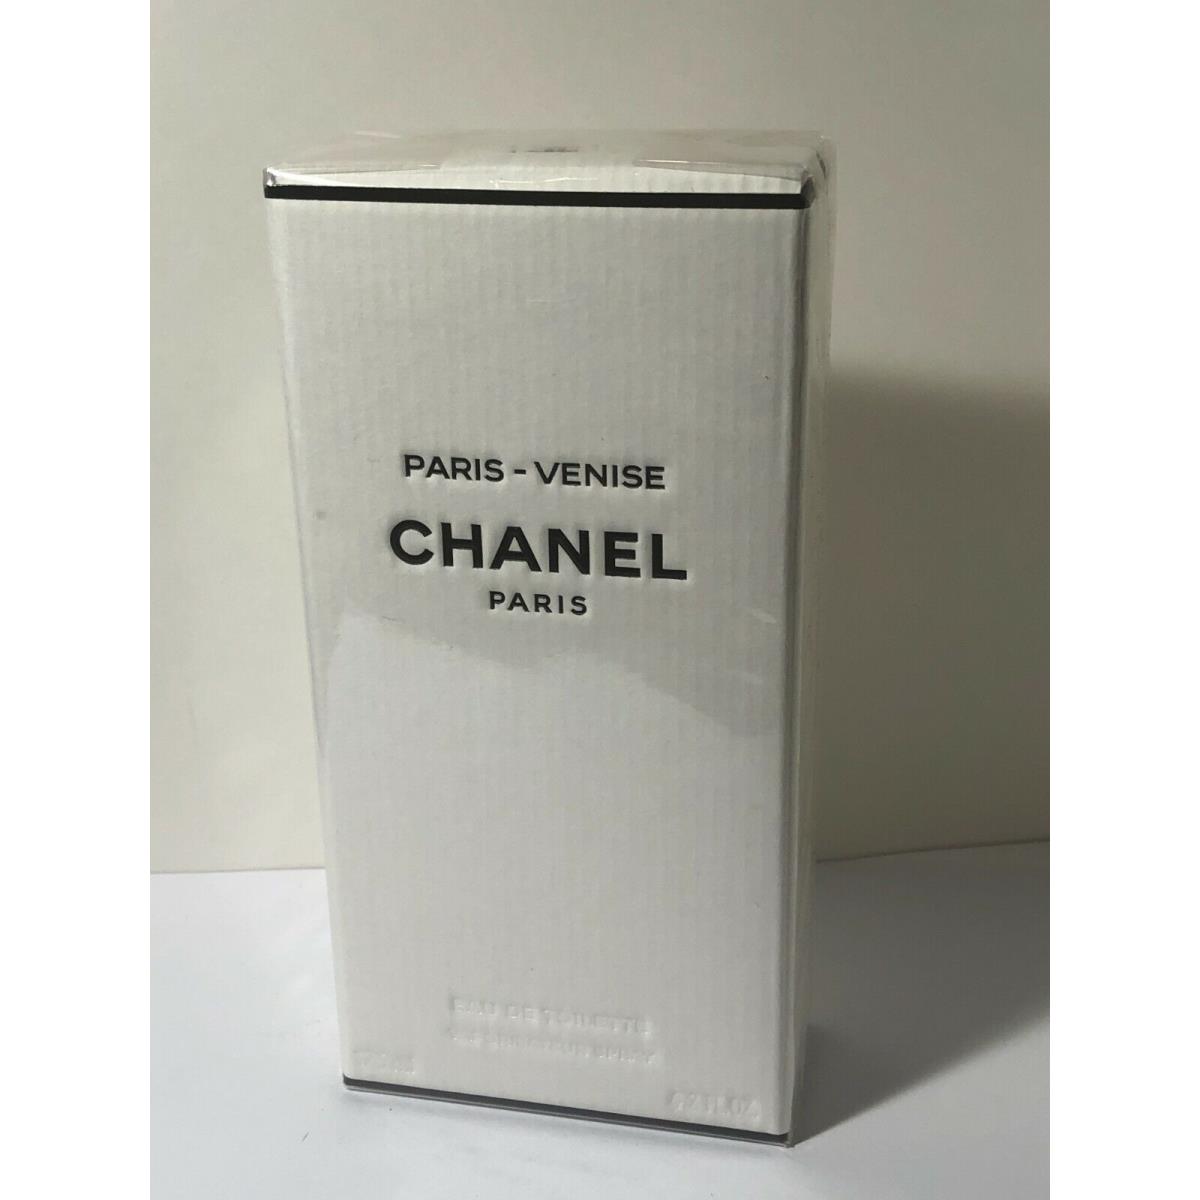 Chanel Paris Venise Eau De Toilette 125 ml / 4.2 fl oz